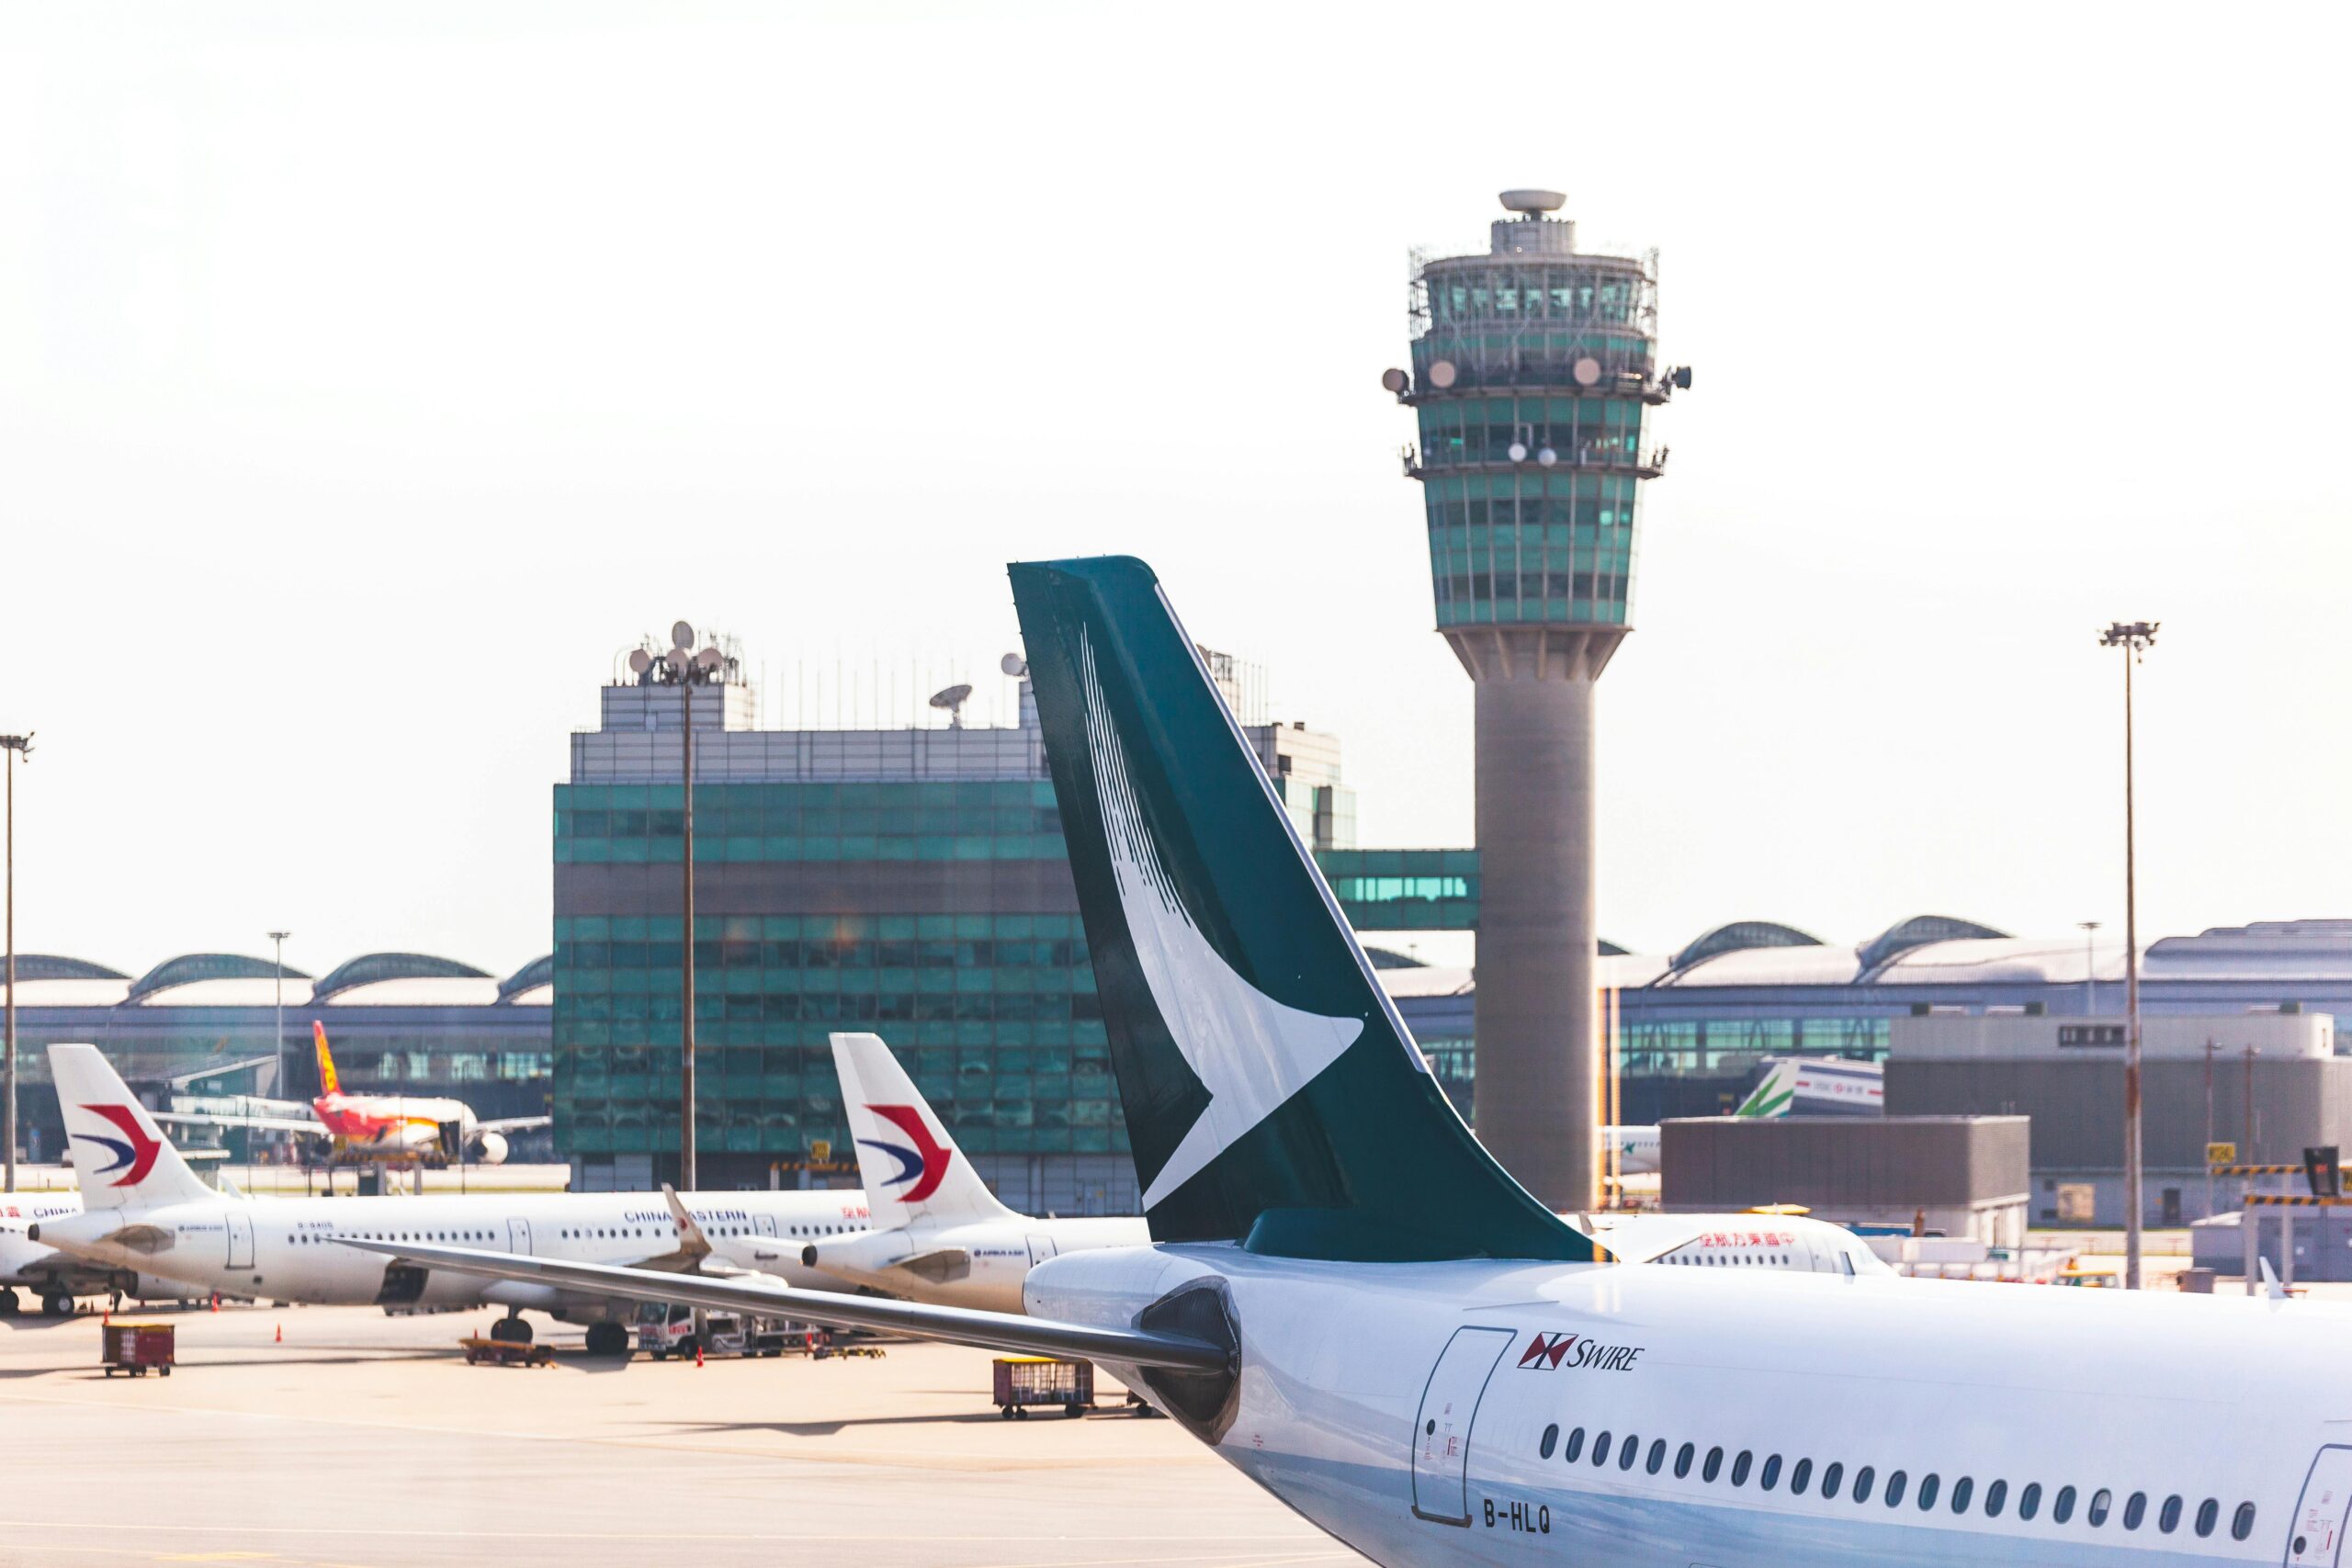 Flughafen mit Blick auf den Kontrollturm. Im Vordergrund sind drei Flugzeuge zu sehen.